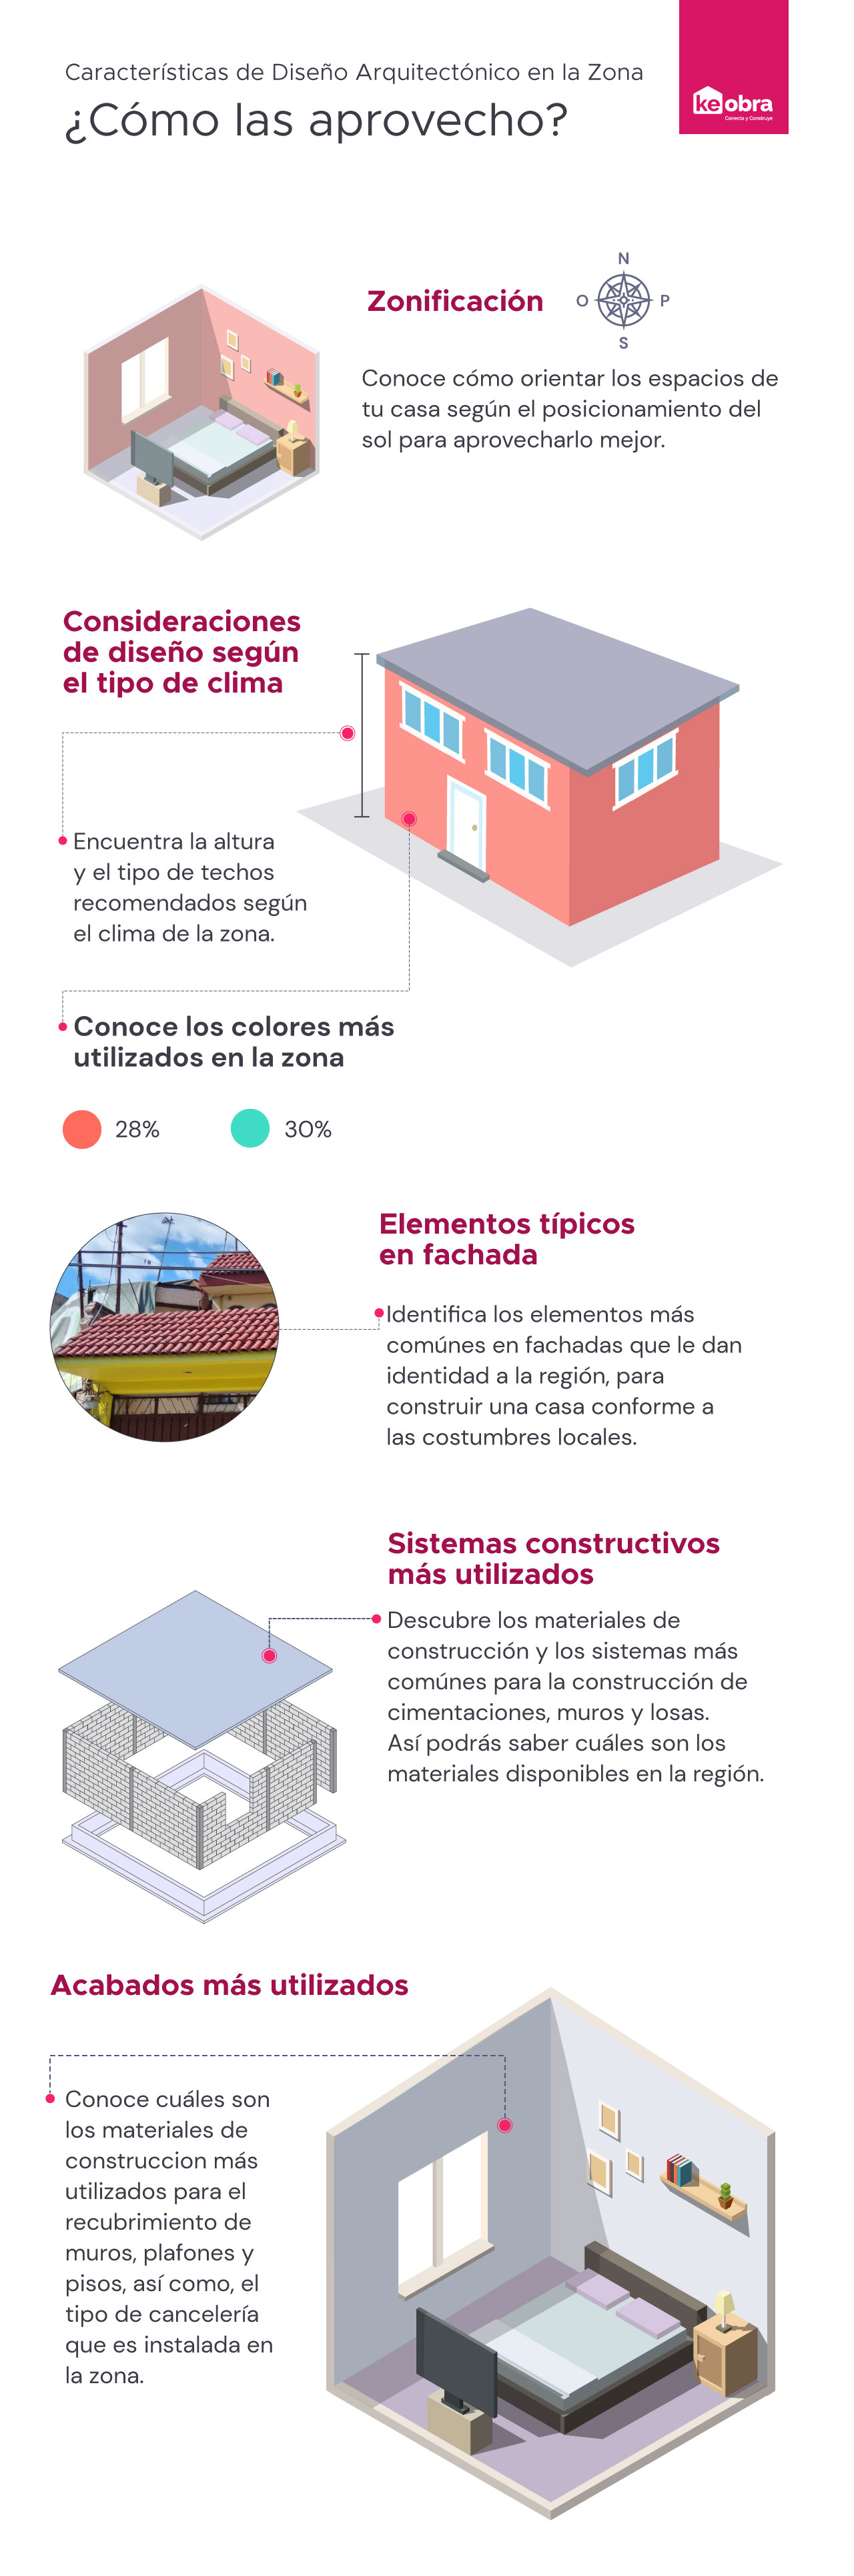 Características de diseño arquitectónico en México